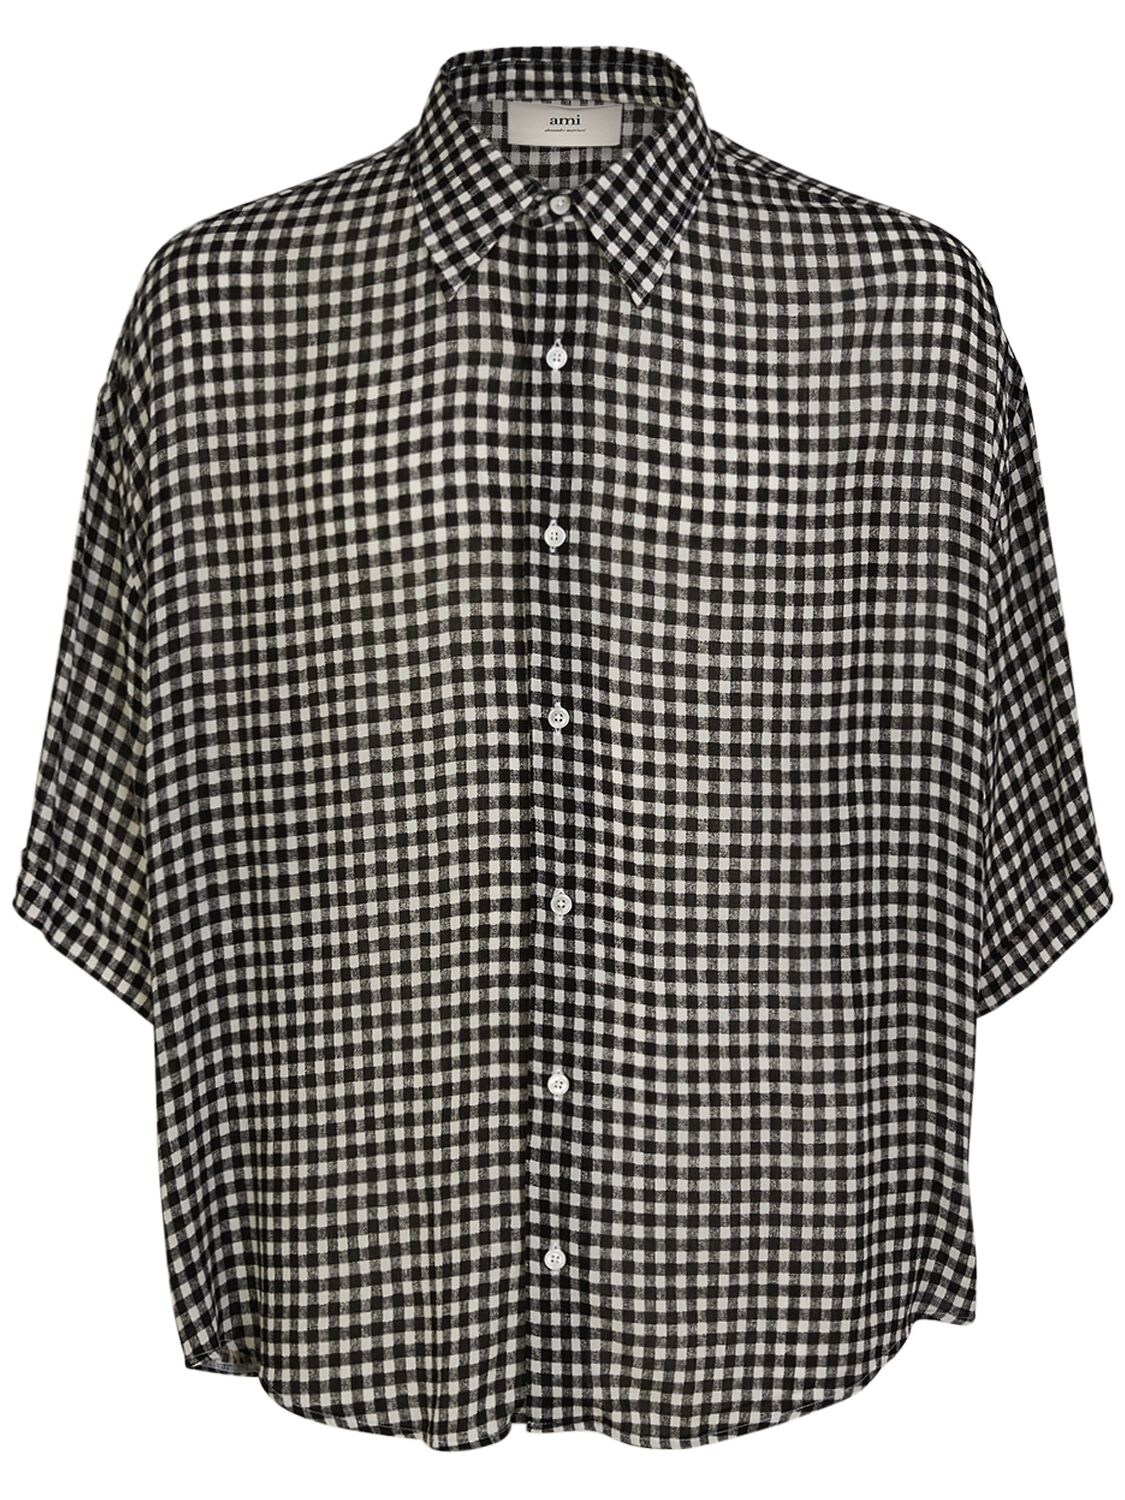 Image of Check Print Viscose Crepe Shirt